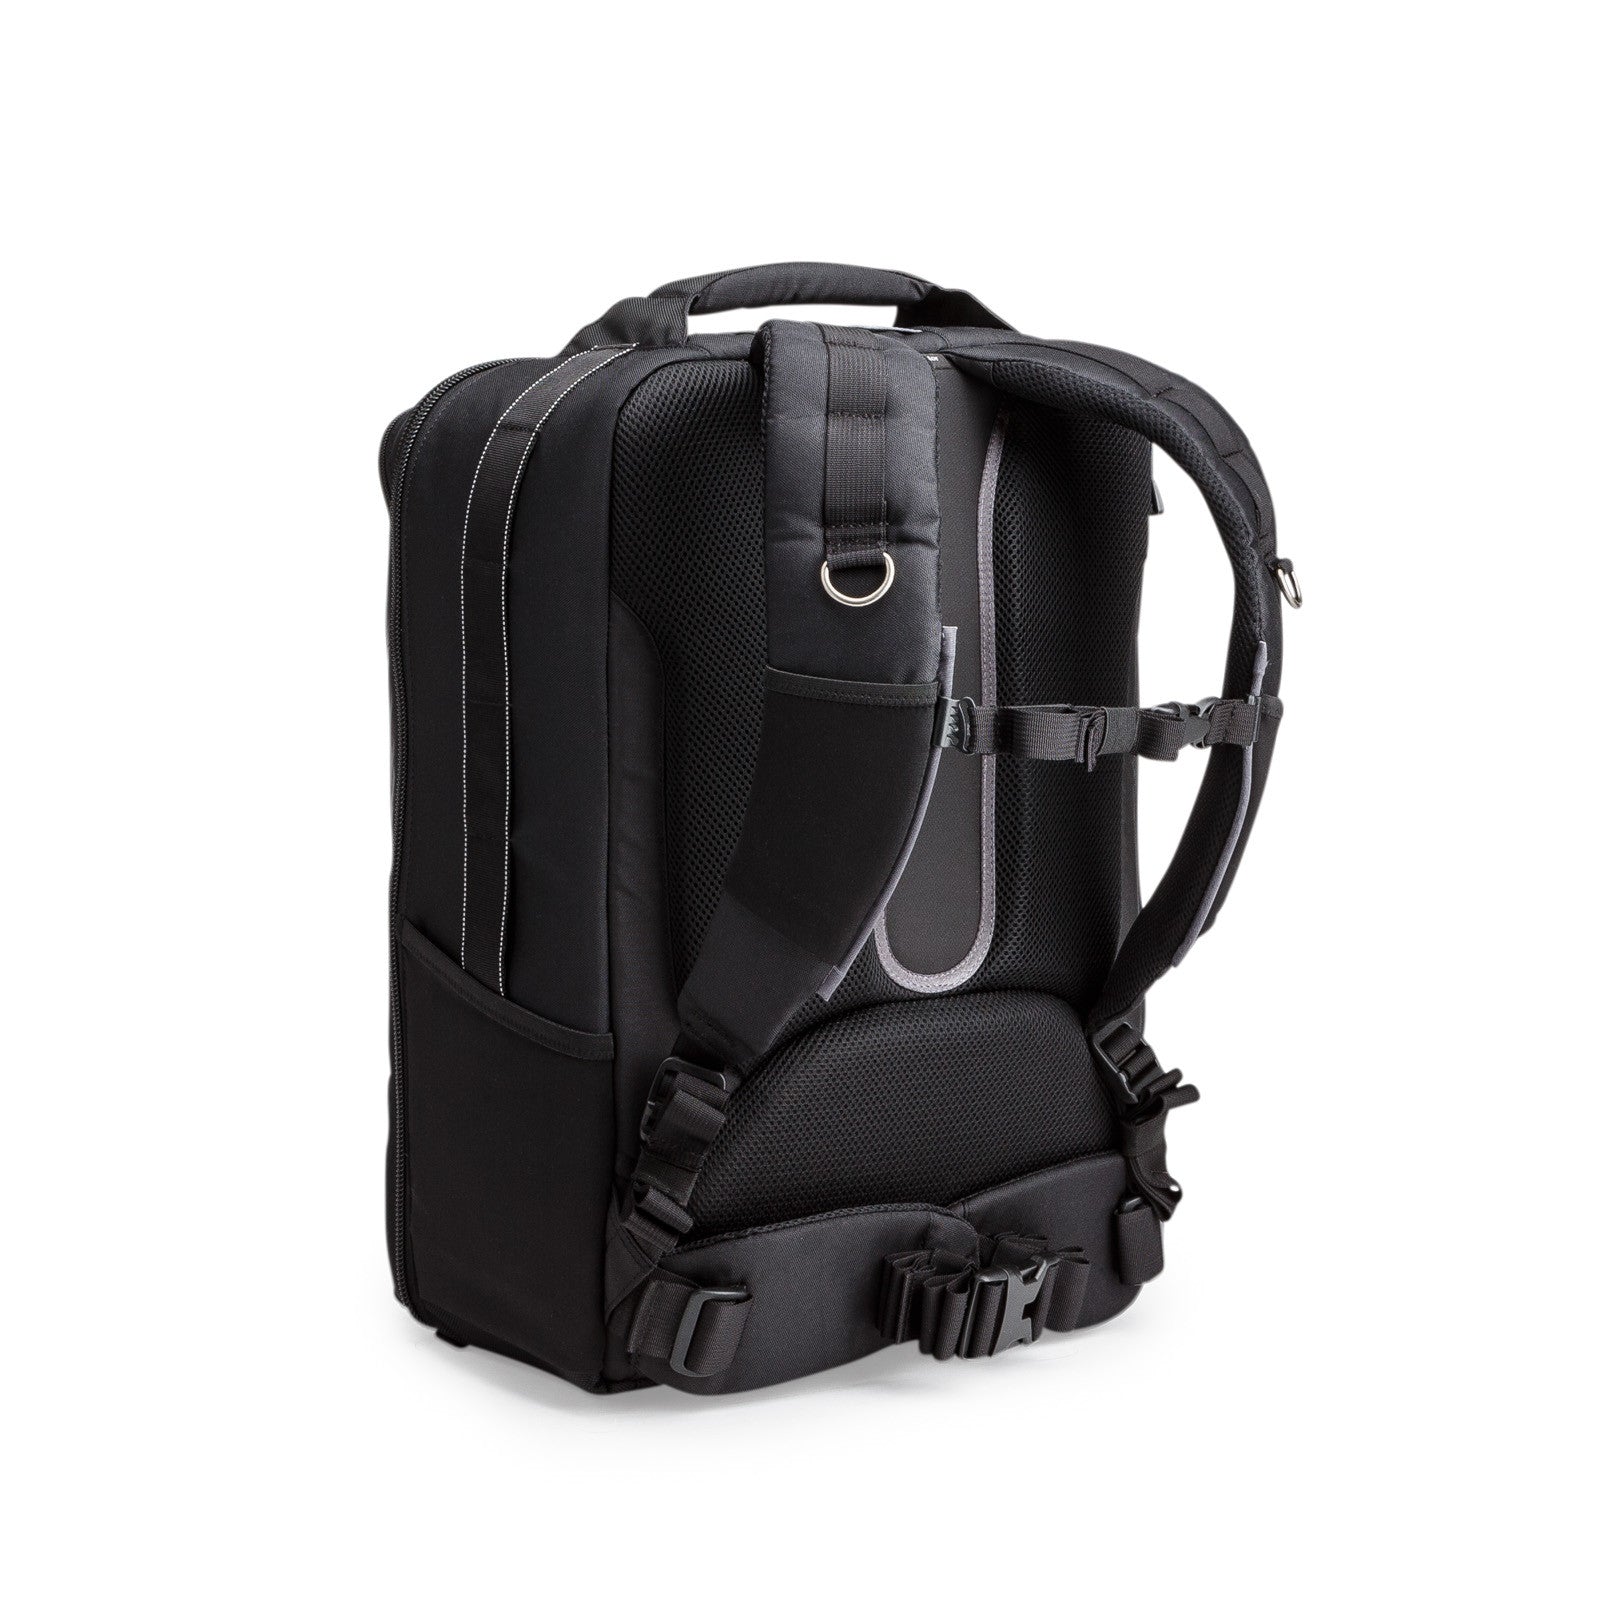 Aeroplane Travel Bag Travel Wizard Bag Backpack Hand Luggage Shoulder Bag